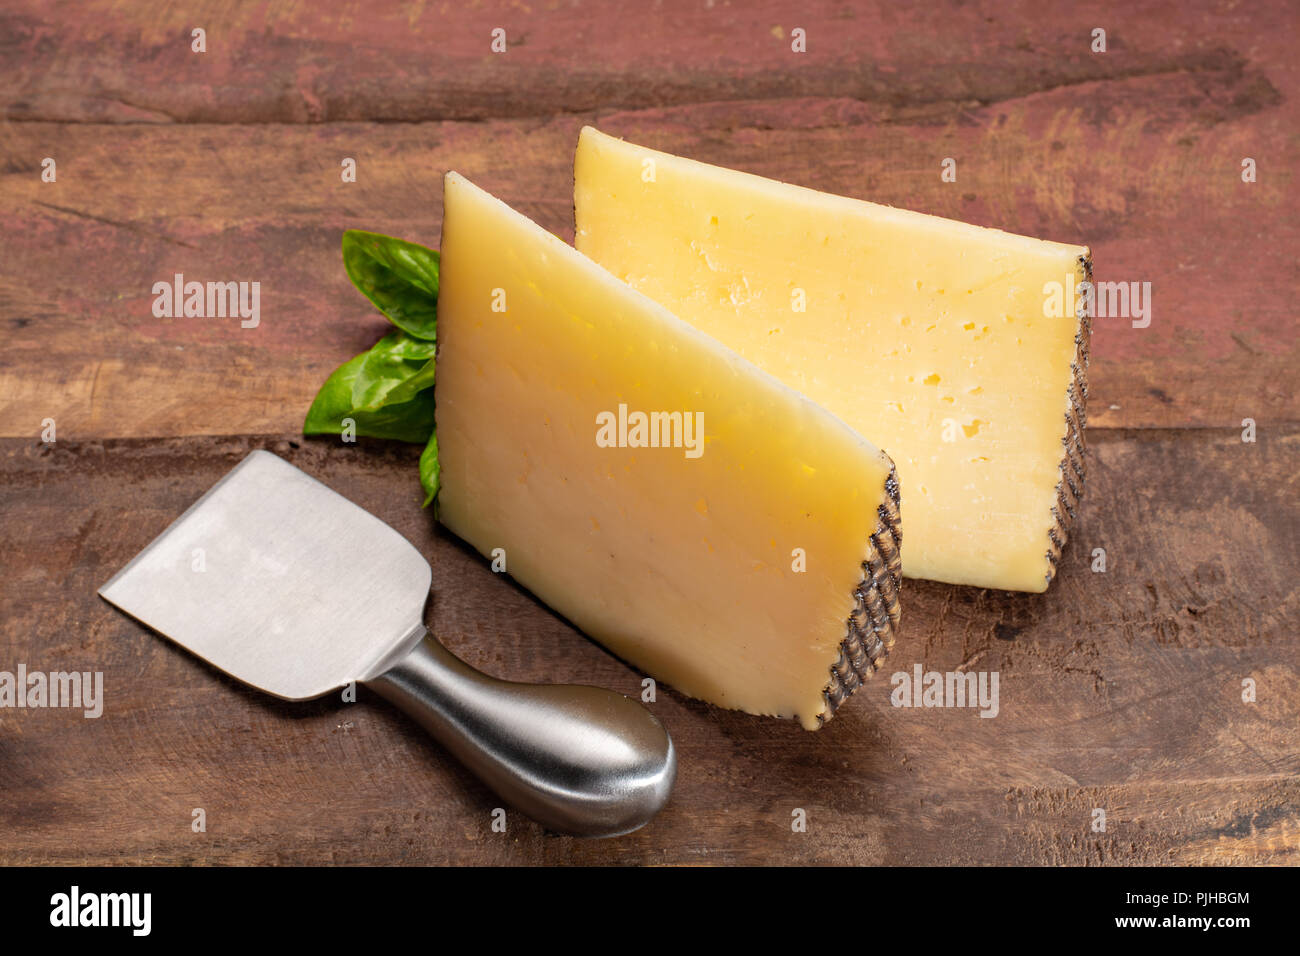 Deux morceaux de Manchego, queso manchego, fromage fabriqué dans la région de La Mancha de l'Espagne avec du lait de brebis de la race Manchega Banque D'Images